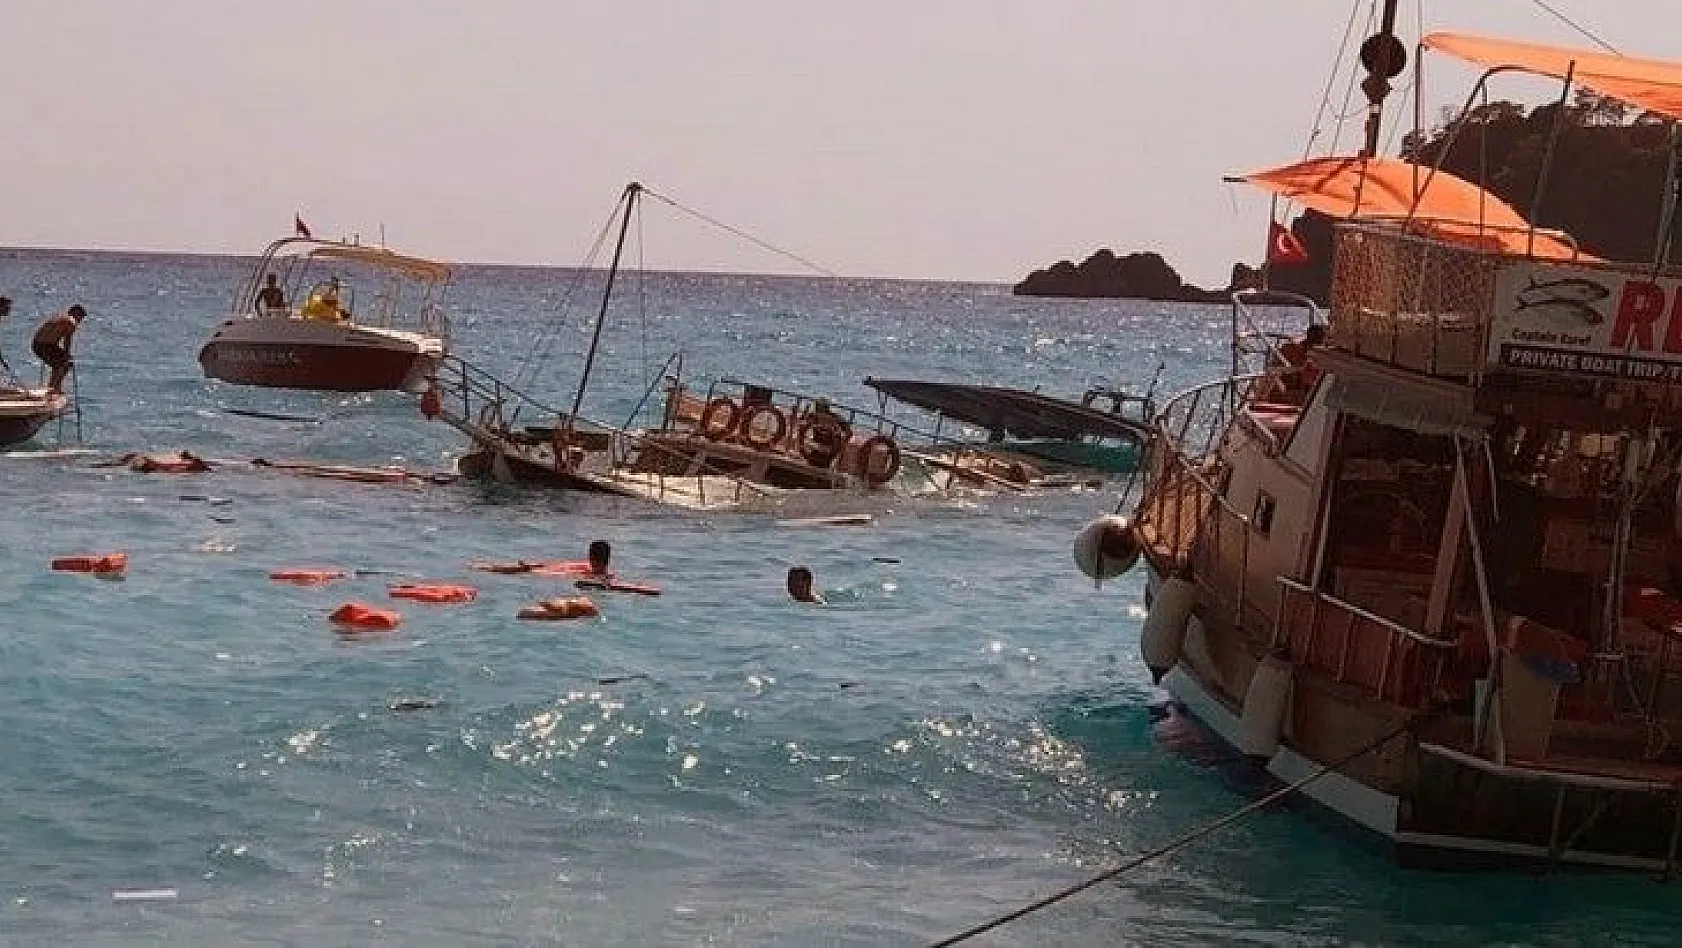 Ölüdeniz açıklarında batan teknedeki tüm yolcular kurtarıldı, 2 yaşındaki çocuk hayatını kaybetti